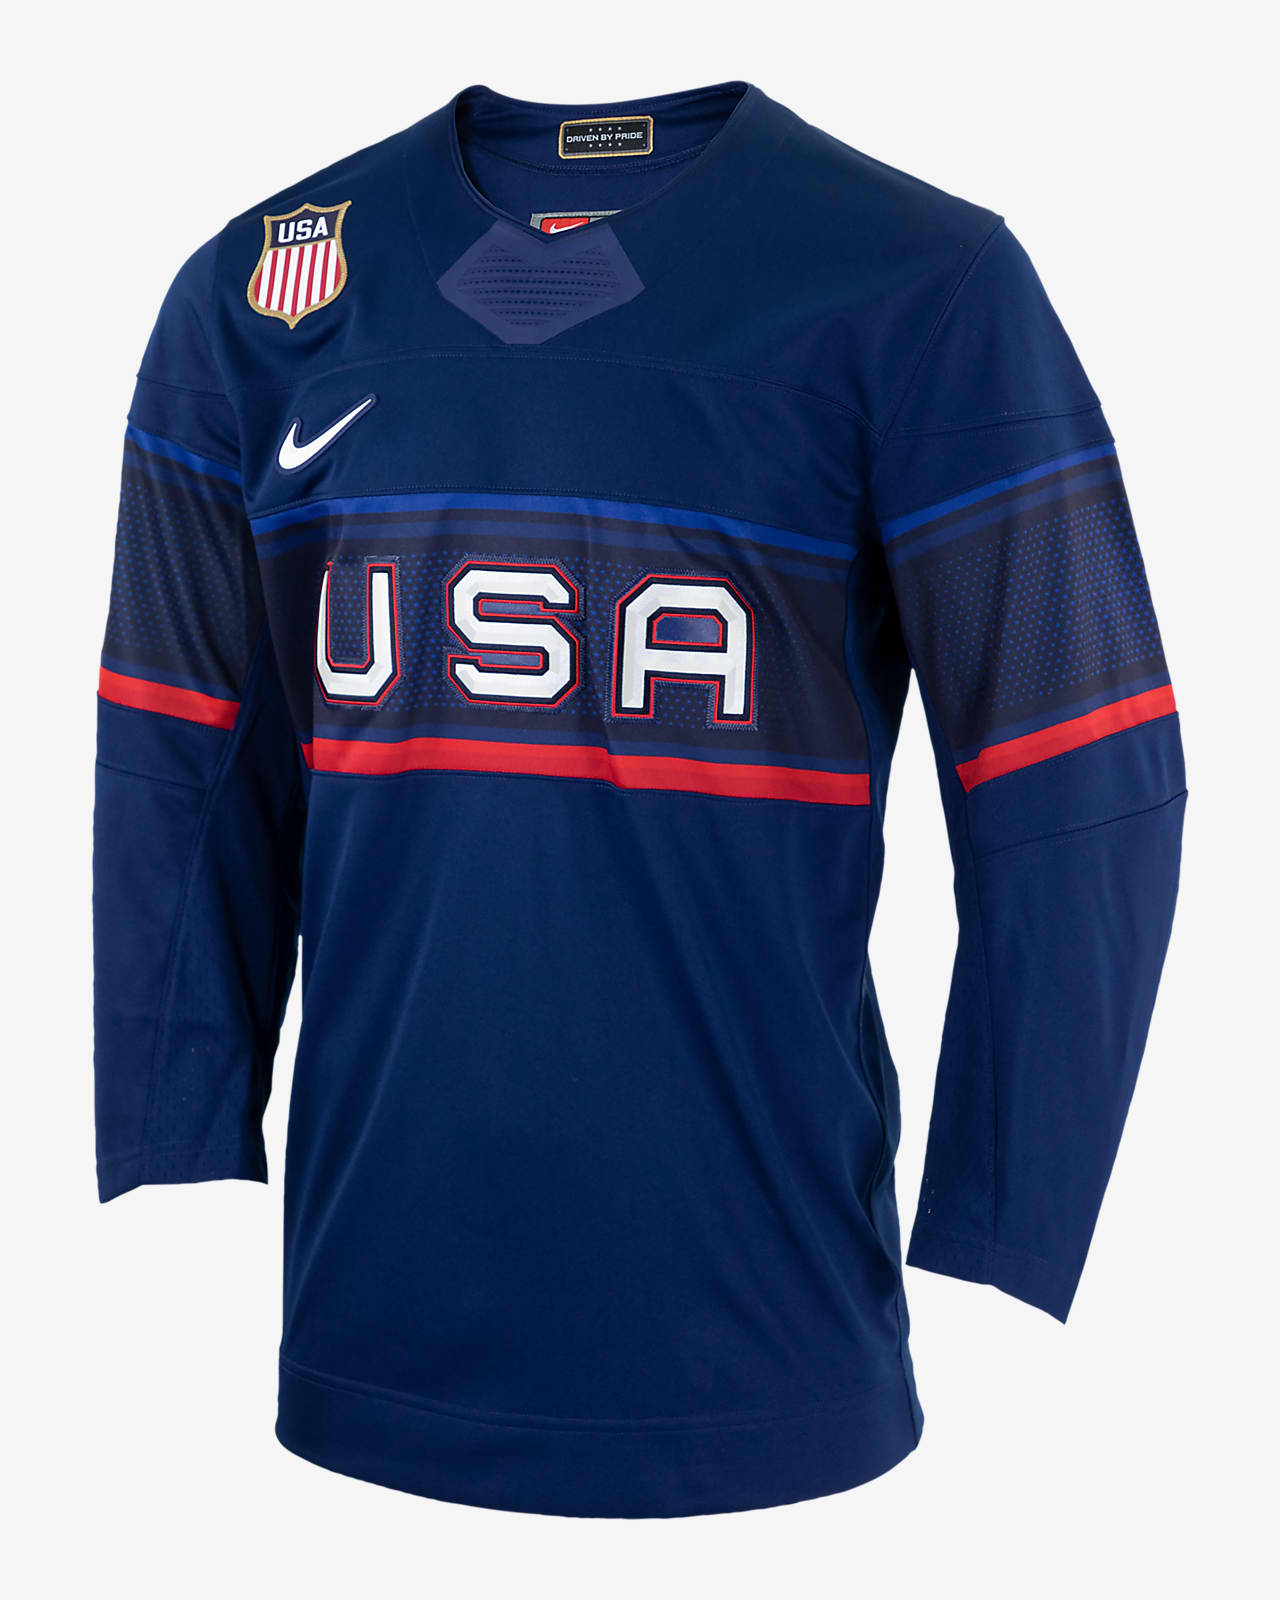 U.S. Men's Nike Hockey Jersey